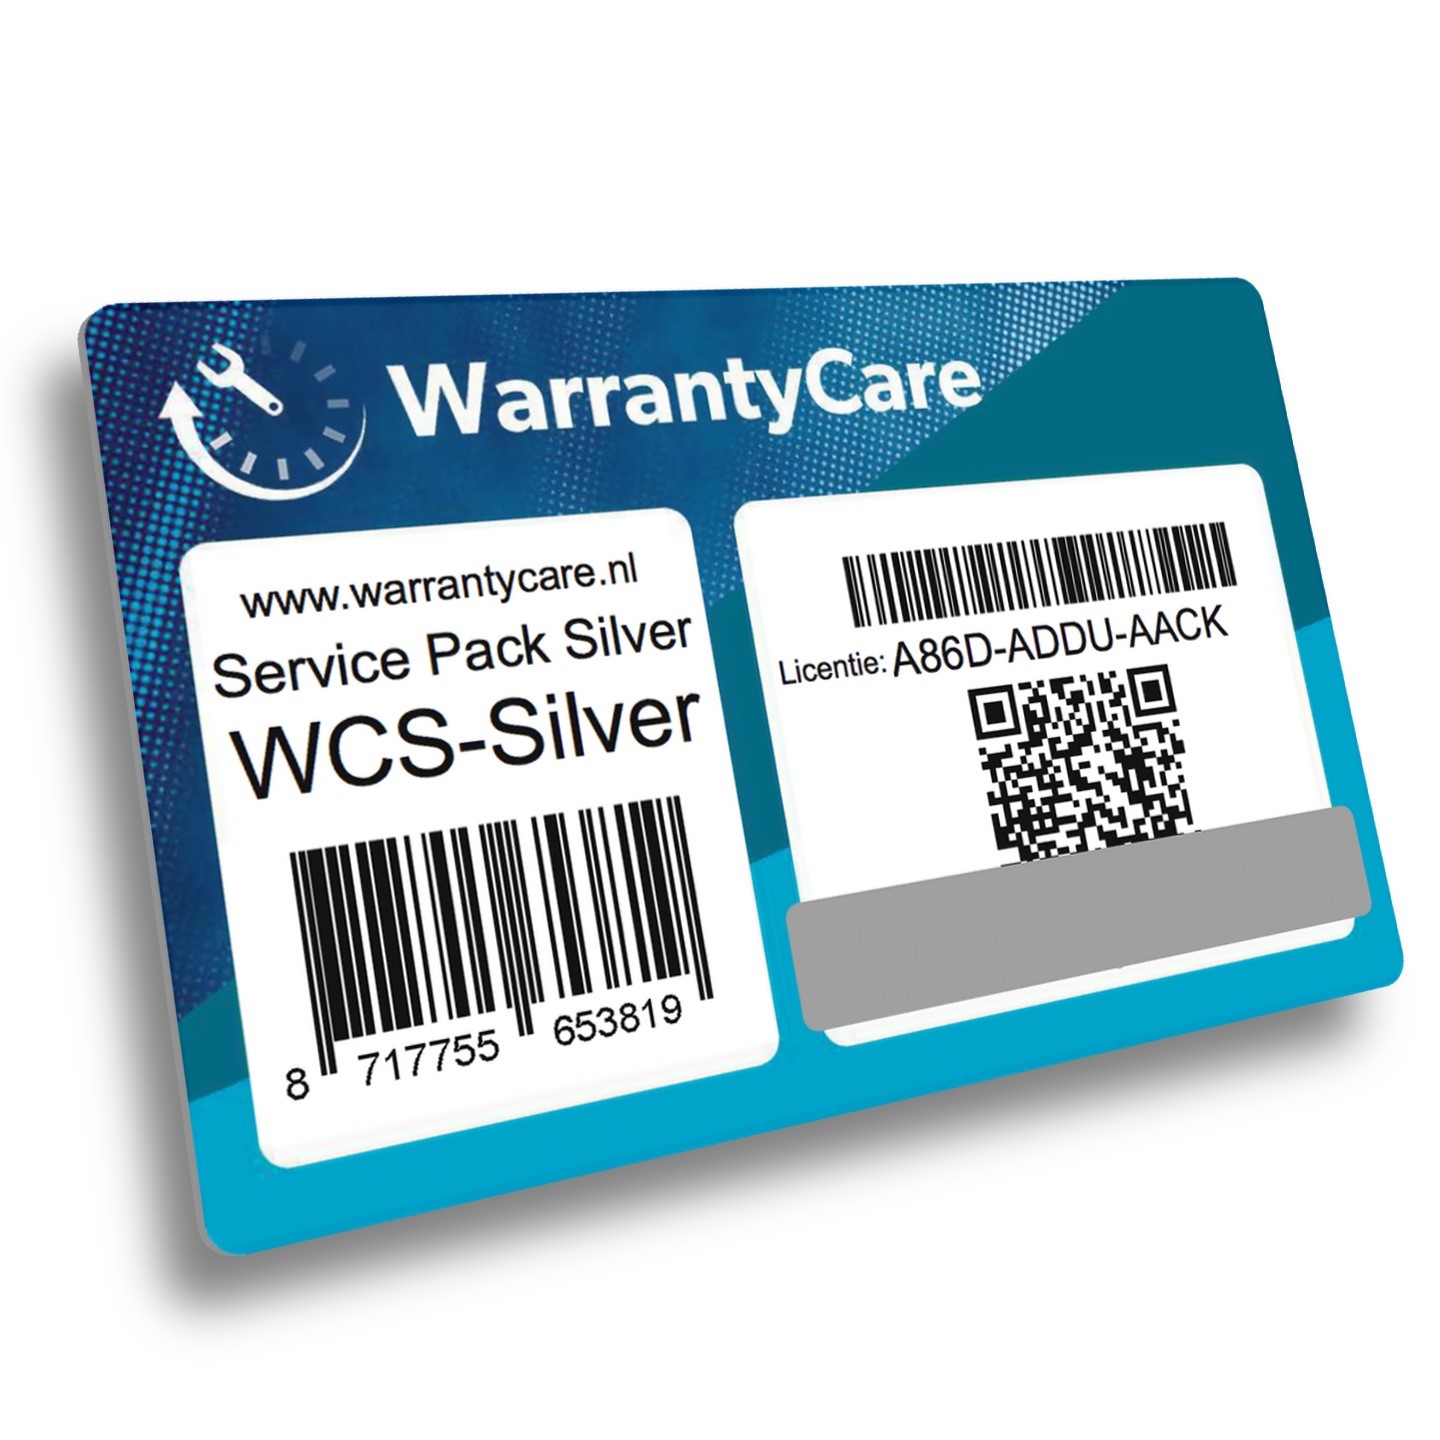 Warrantycare Service Pack E level Silver